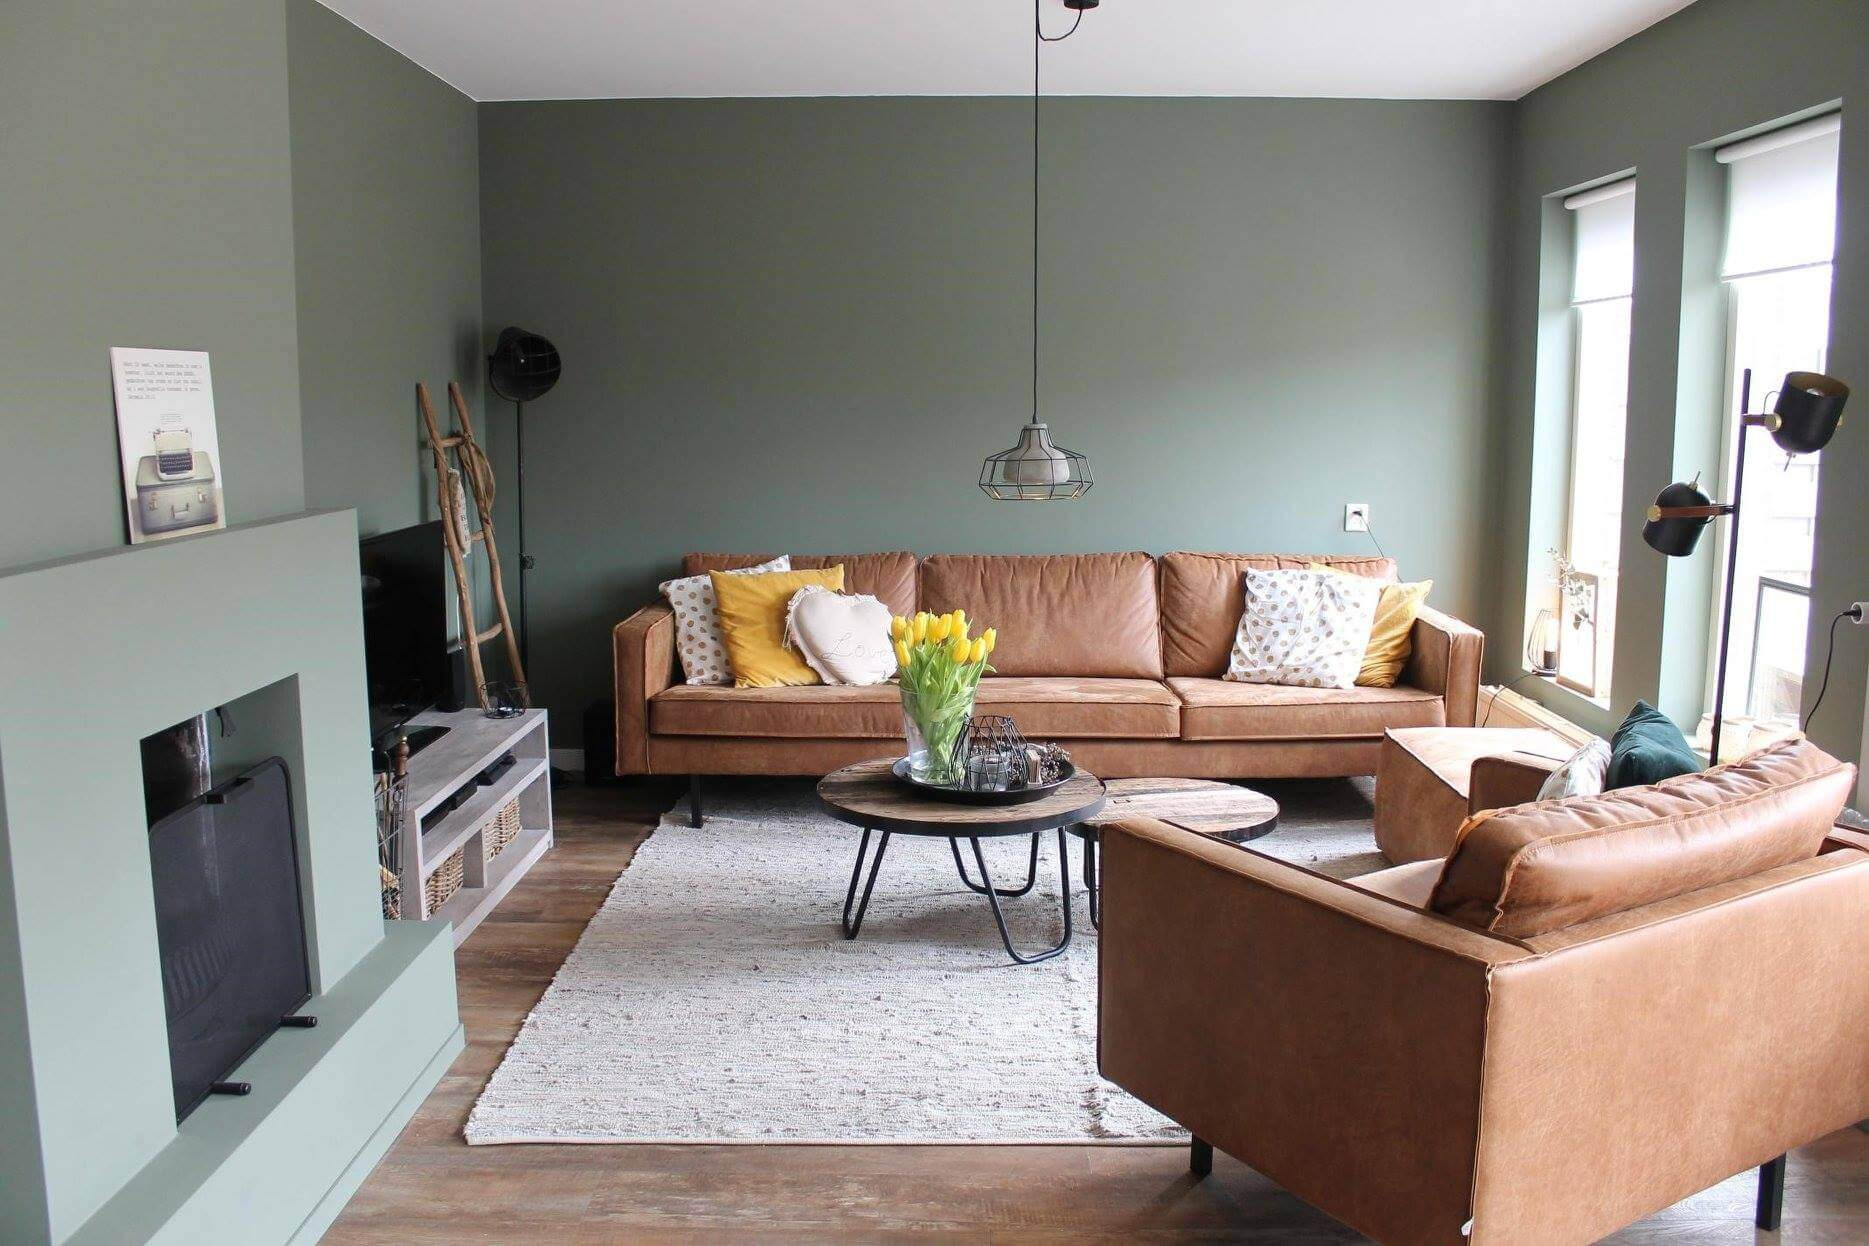 Wohnzimmer Wandgestaltung: Ideen &amp; Die Richtige Farbwahl! regarding Streichen Wandgestaltung Wohnzimmer Farbe